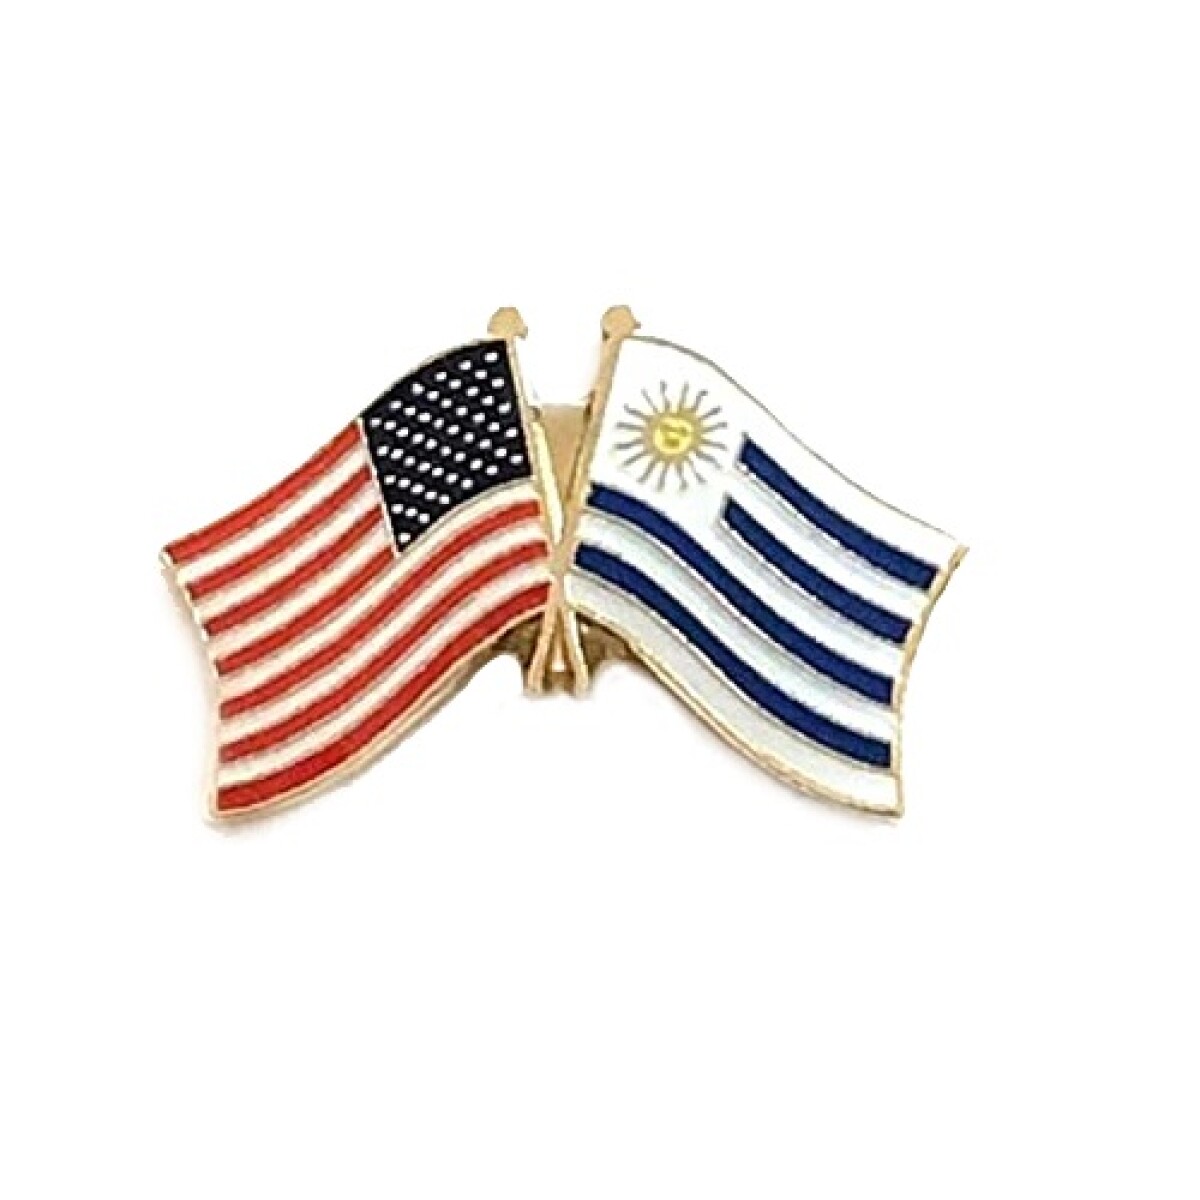 Pin metálico banderas - Estados Unidos y Uruguay 